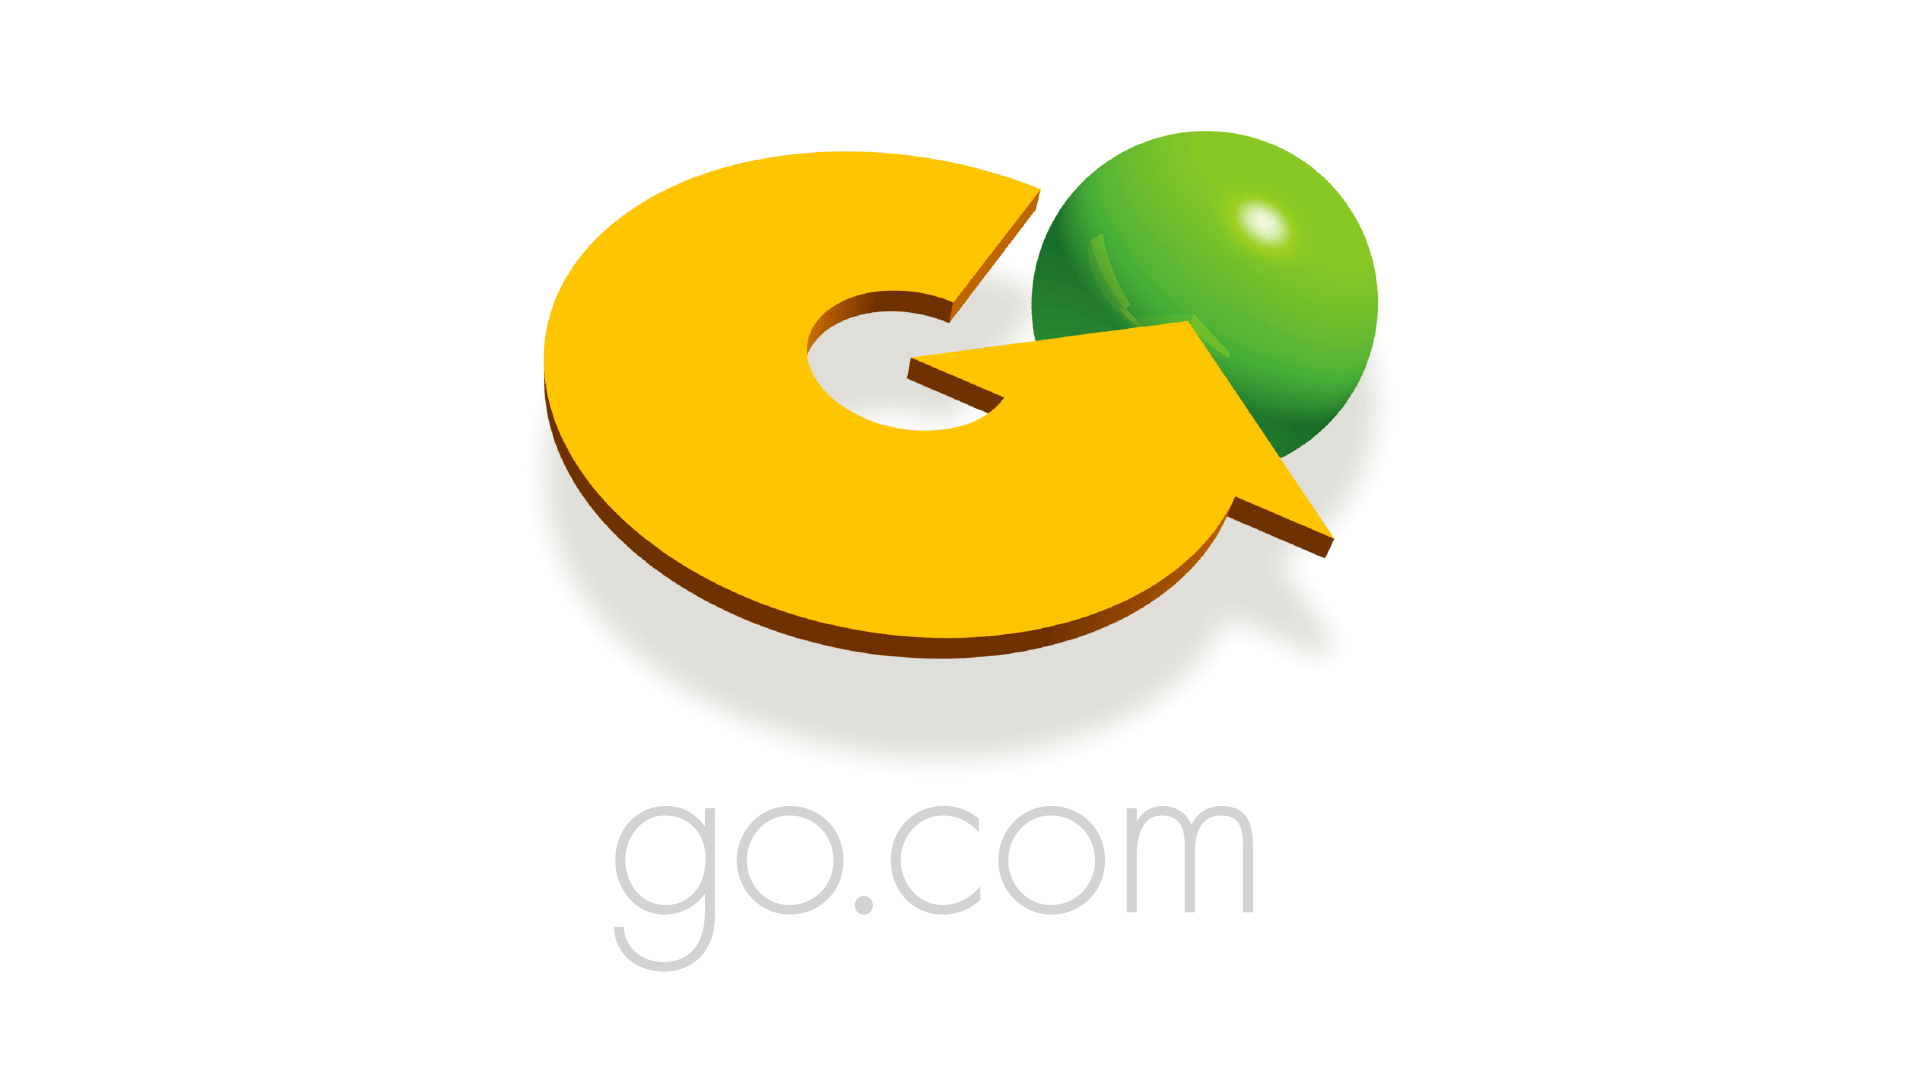 Go.com Logo - XK9 » Go.com